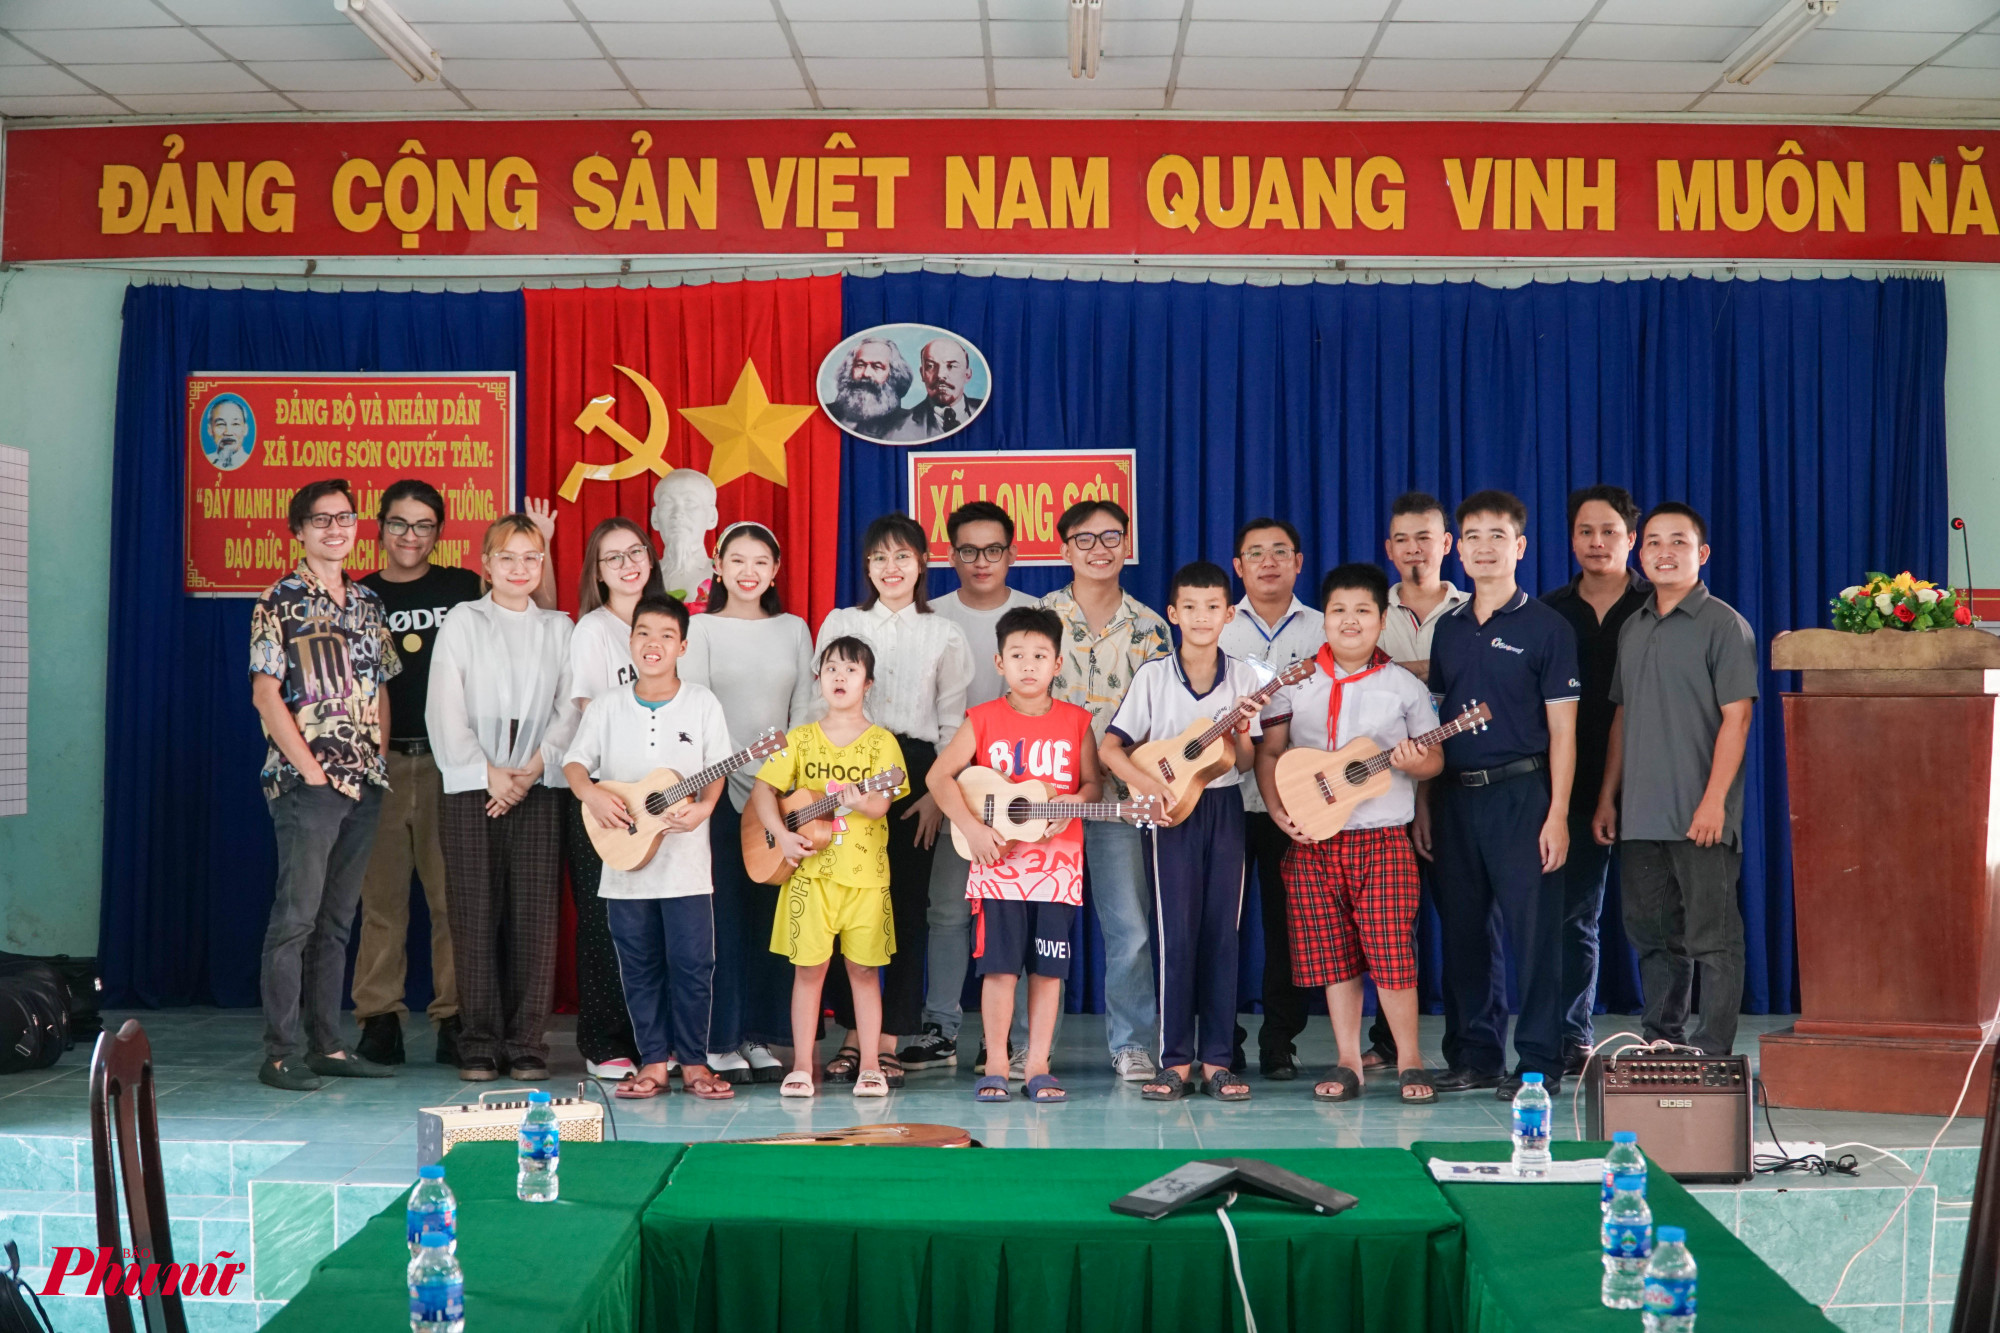 Dự án Âm nhạc cho trẻ thơ tổ chức lần đầu tiên tại UBND xã Long Sơn, đã gửi tặng 12 cây ukulele đến các em nhỏ. Tuy nhiên, do lịch học tập, một số em đã không thể đến nhận trực tiếp